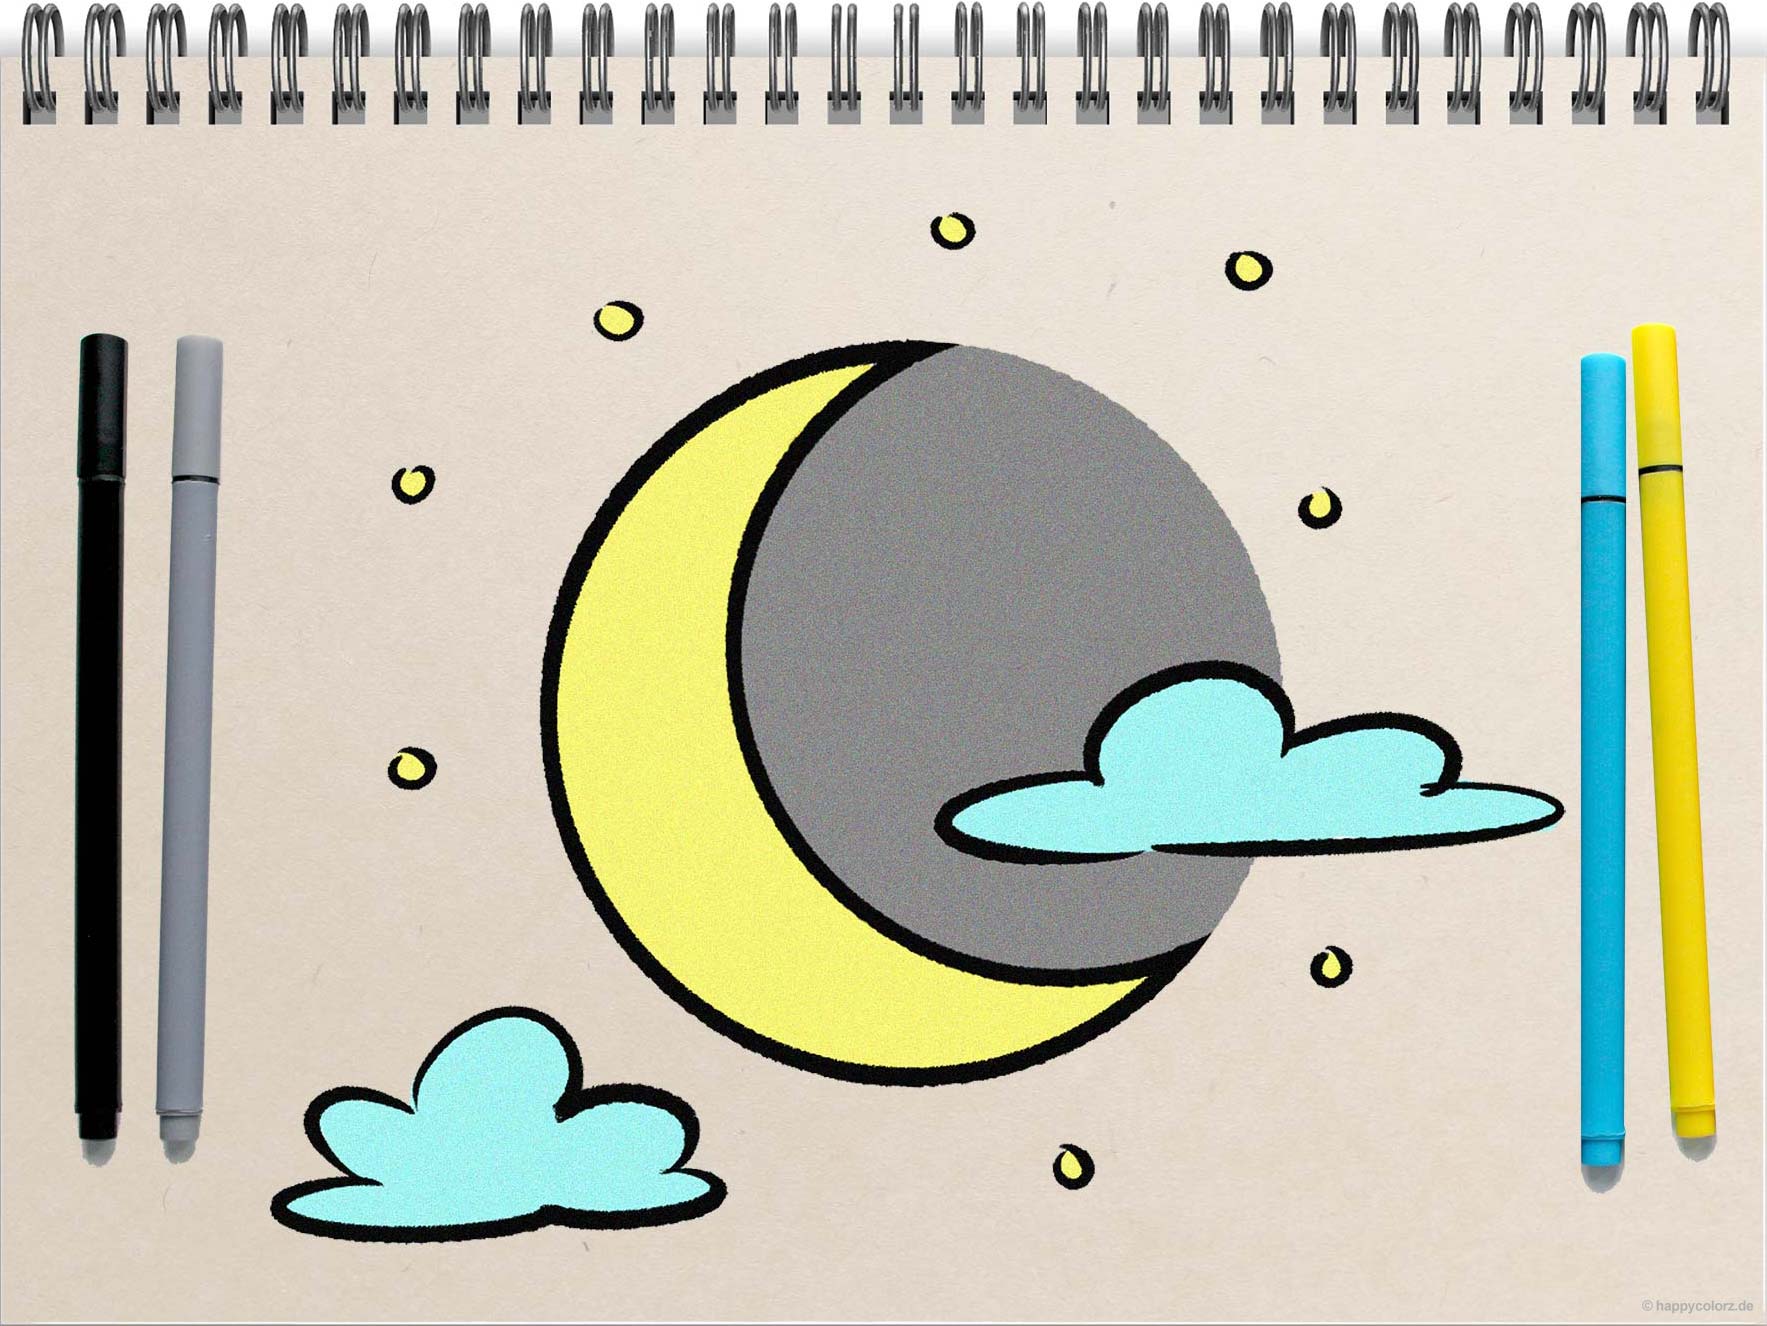 Mond zeichnen - Schritt-für-Schritt Anleitung mit Vorlagen